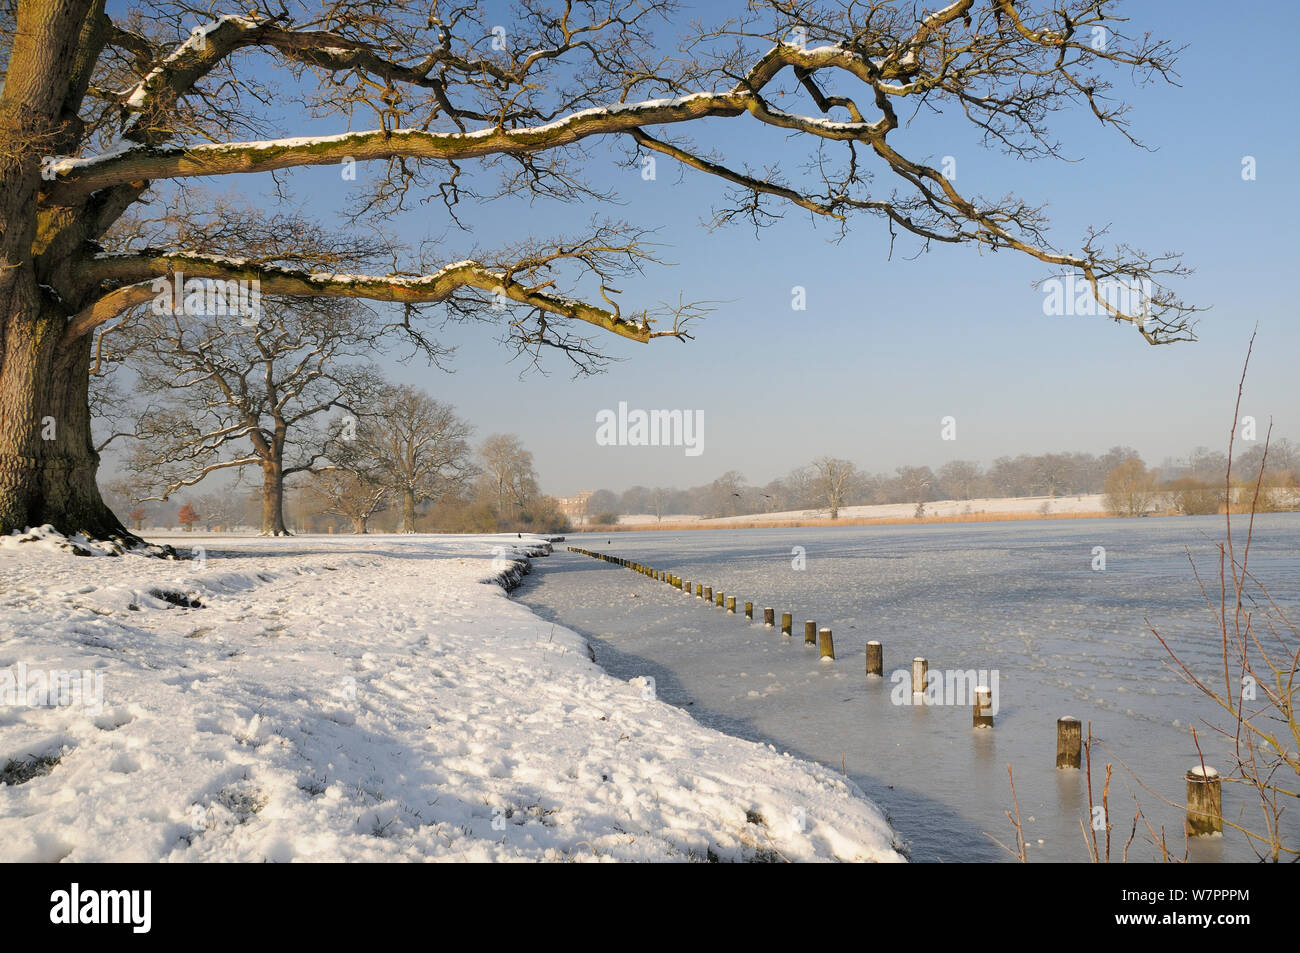 Lac gelé Corsham et anglais de chênes (Quercus robur) en hiver à Corsham Court dans l'arrière-plan, Wiltshire, Royaume-Uni, février 2013 Banque D'Images